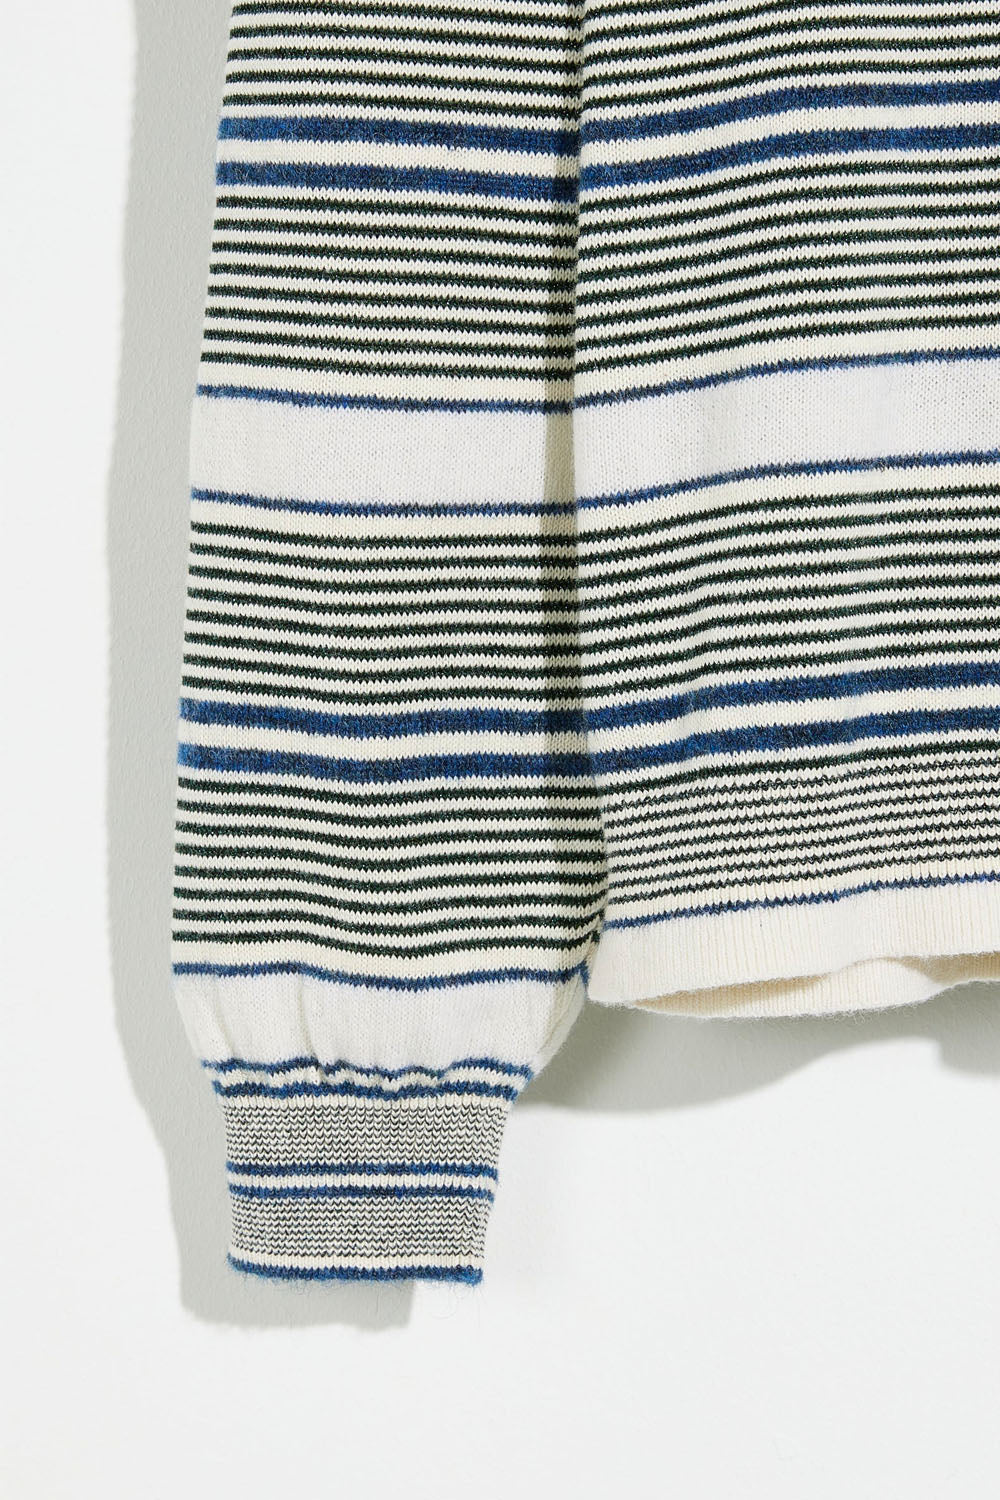 Bellerose - Gopsy Sweater: Stripe B